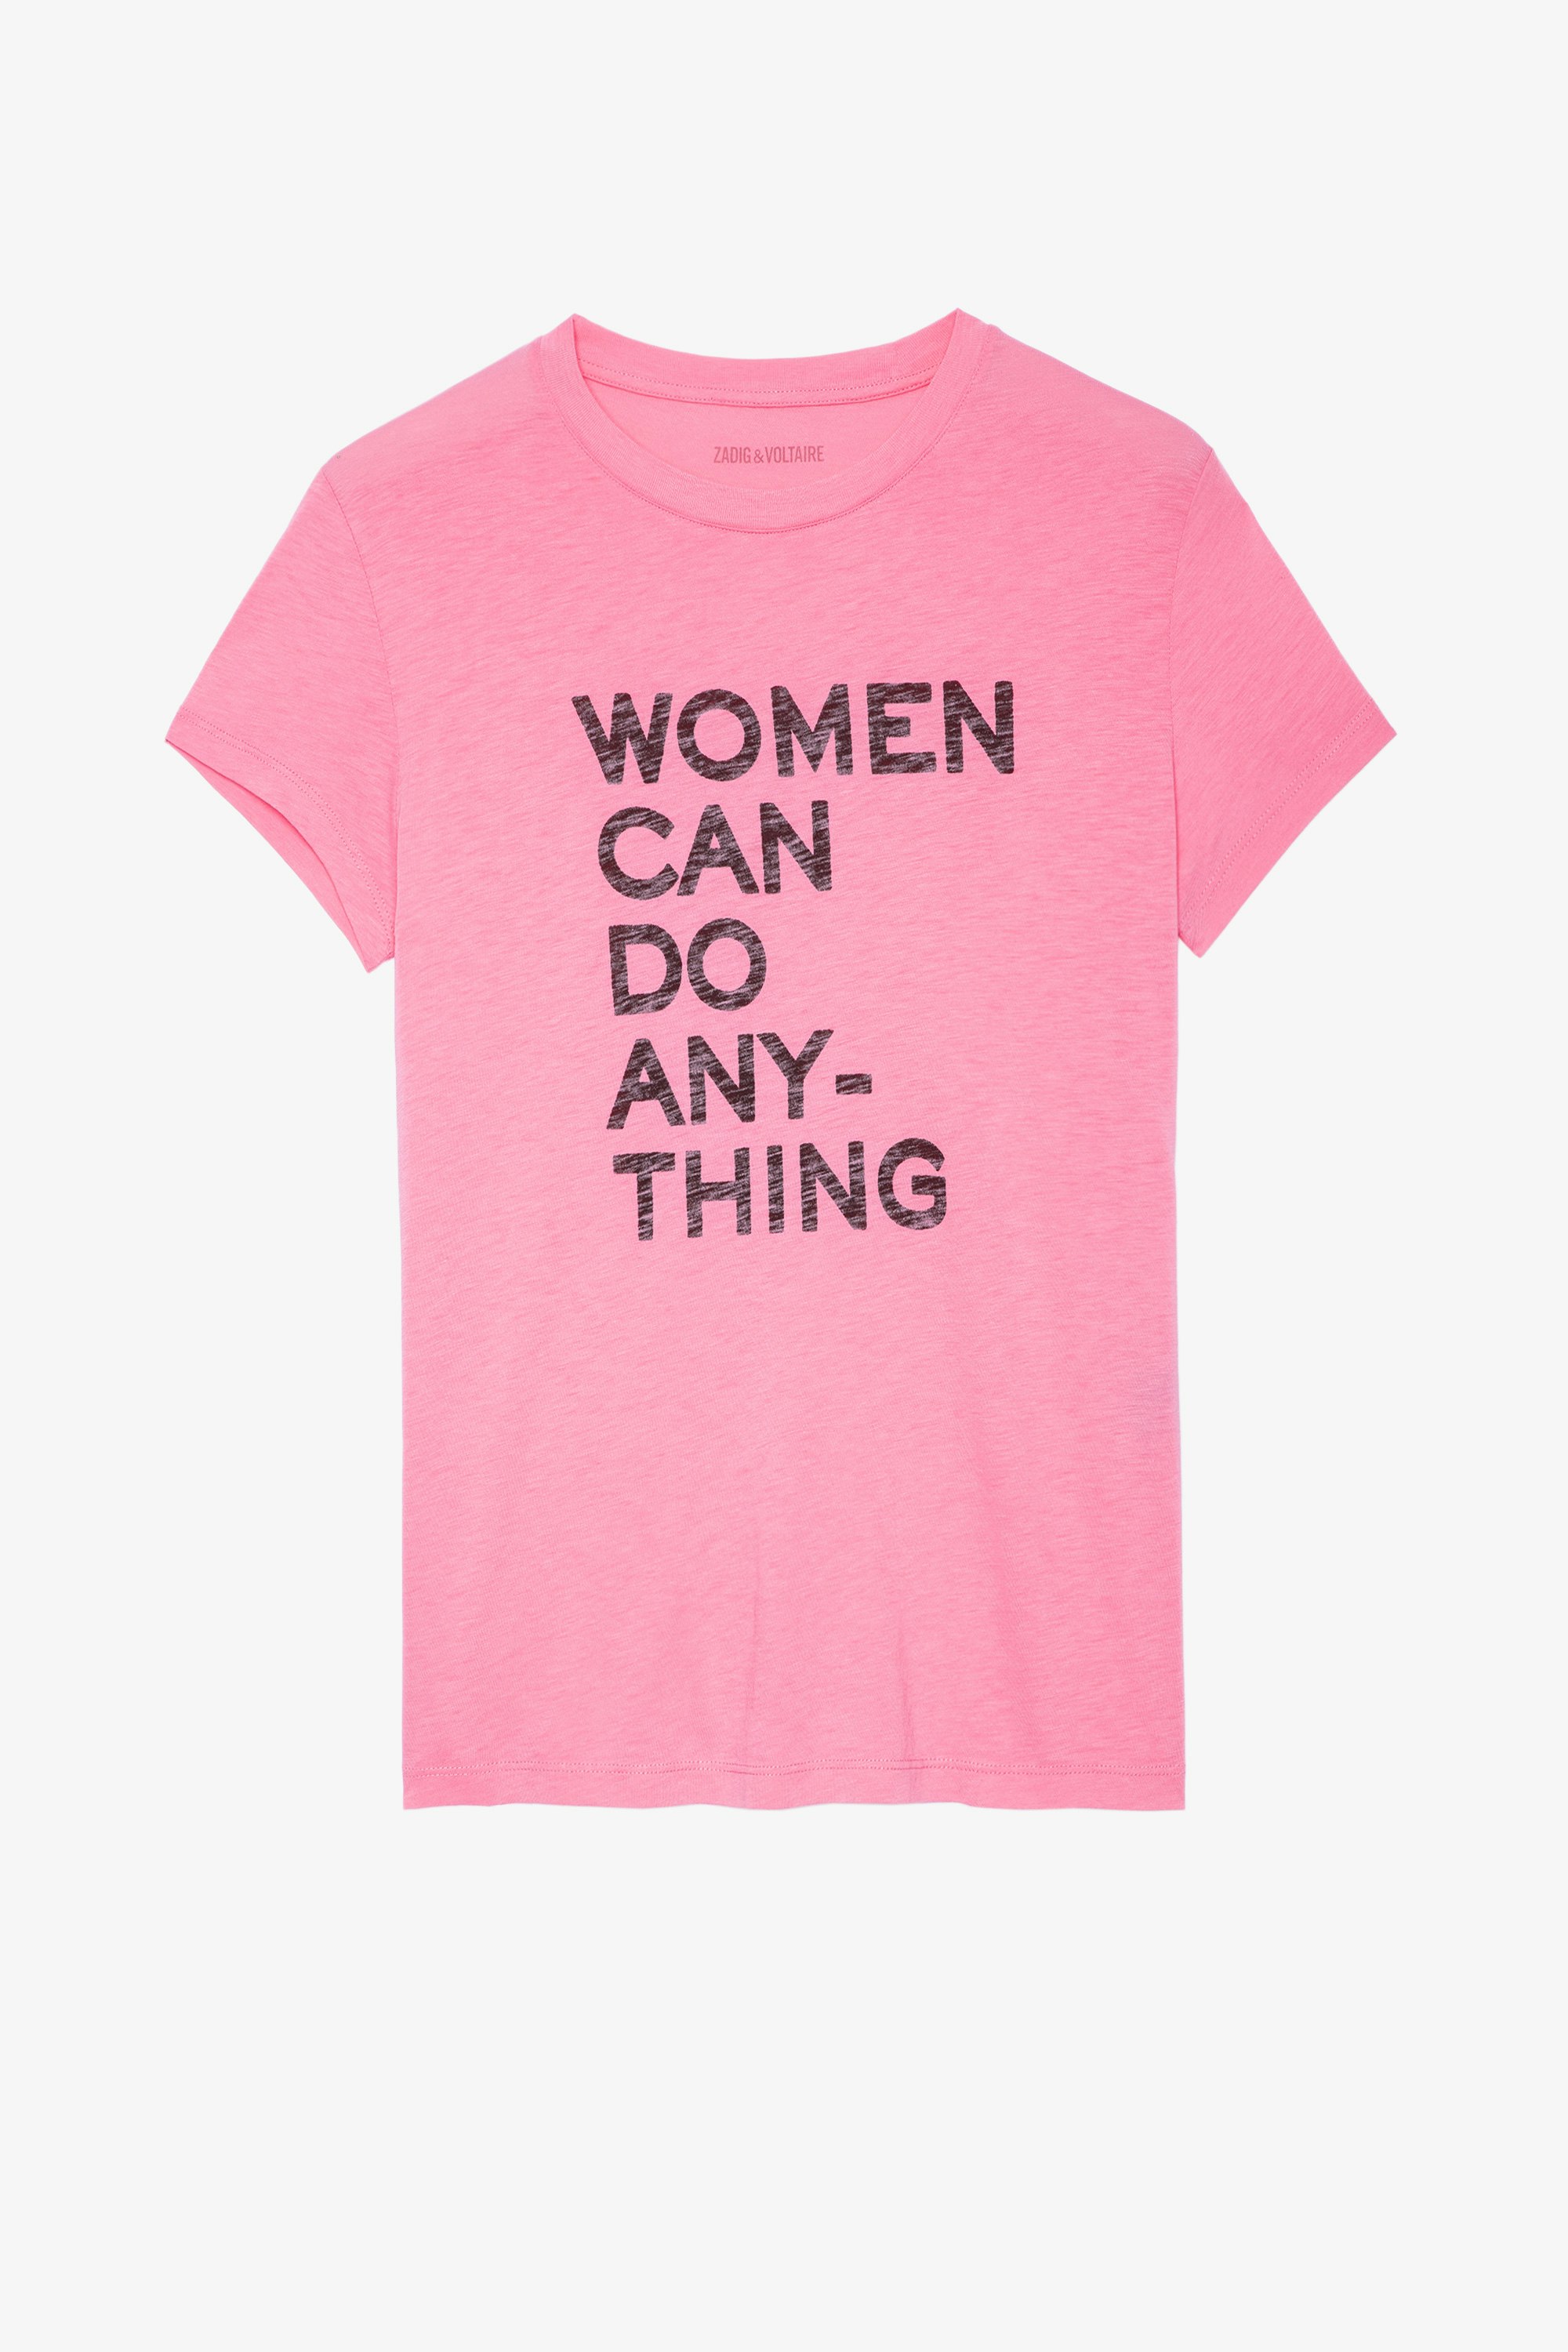 T-shirt Walk Women can do anything T-shirt aus rosafarbener Baumwolle „Women can do anything“ für Damen